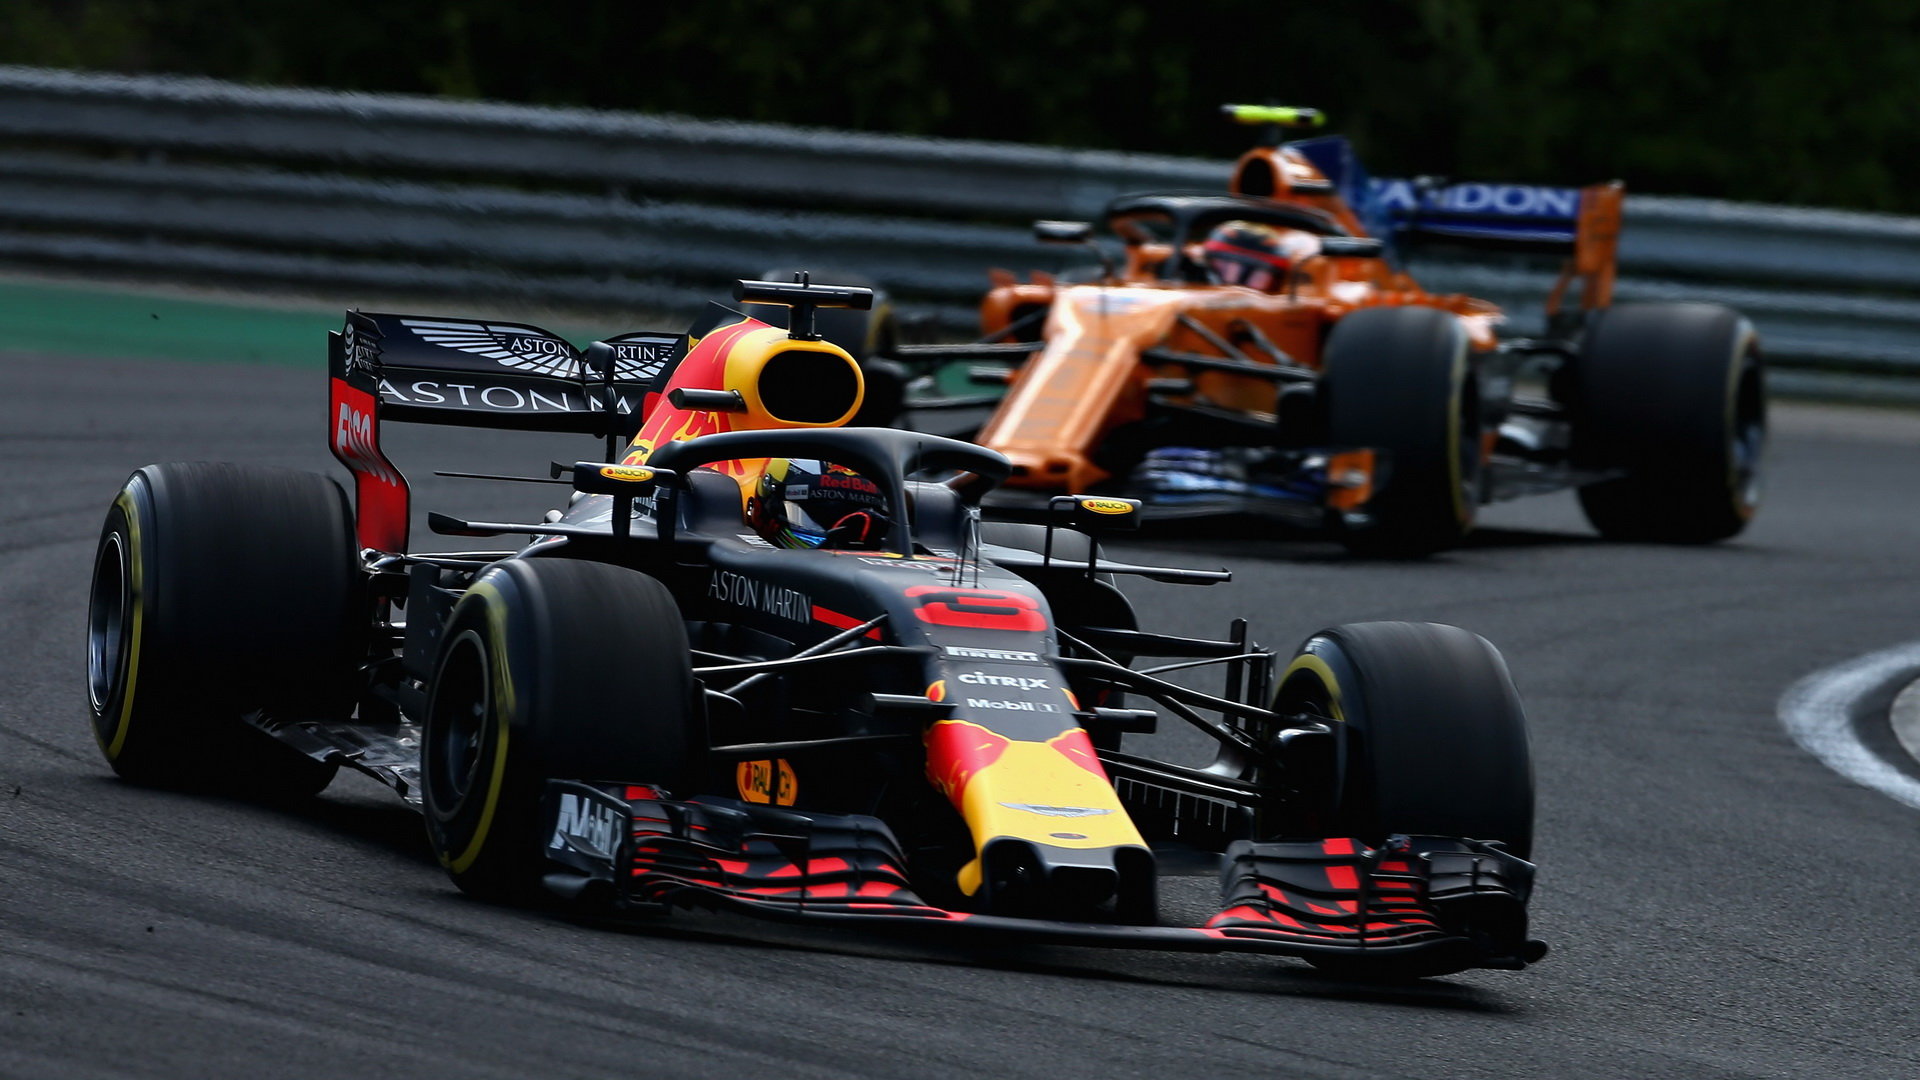 McLaren letos na Red Bull ztrácí přes 1,5 sekundy, má co dohánět